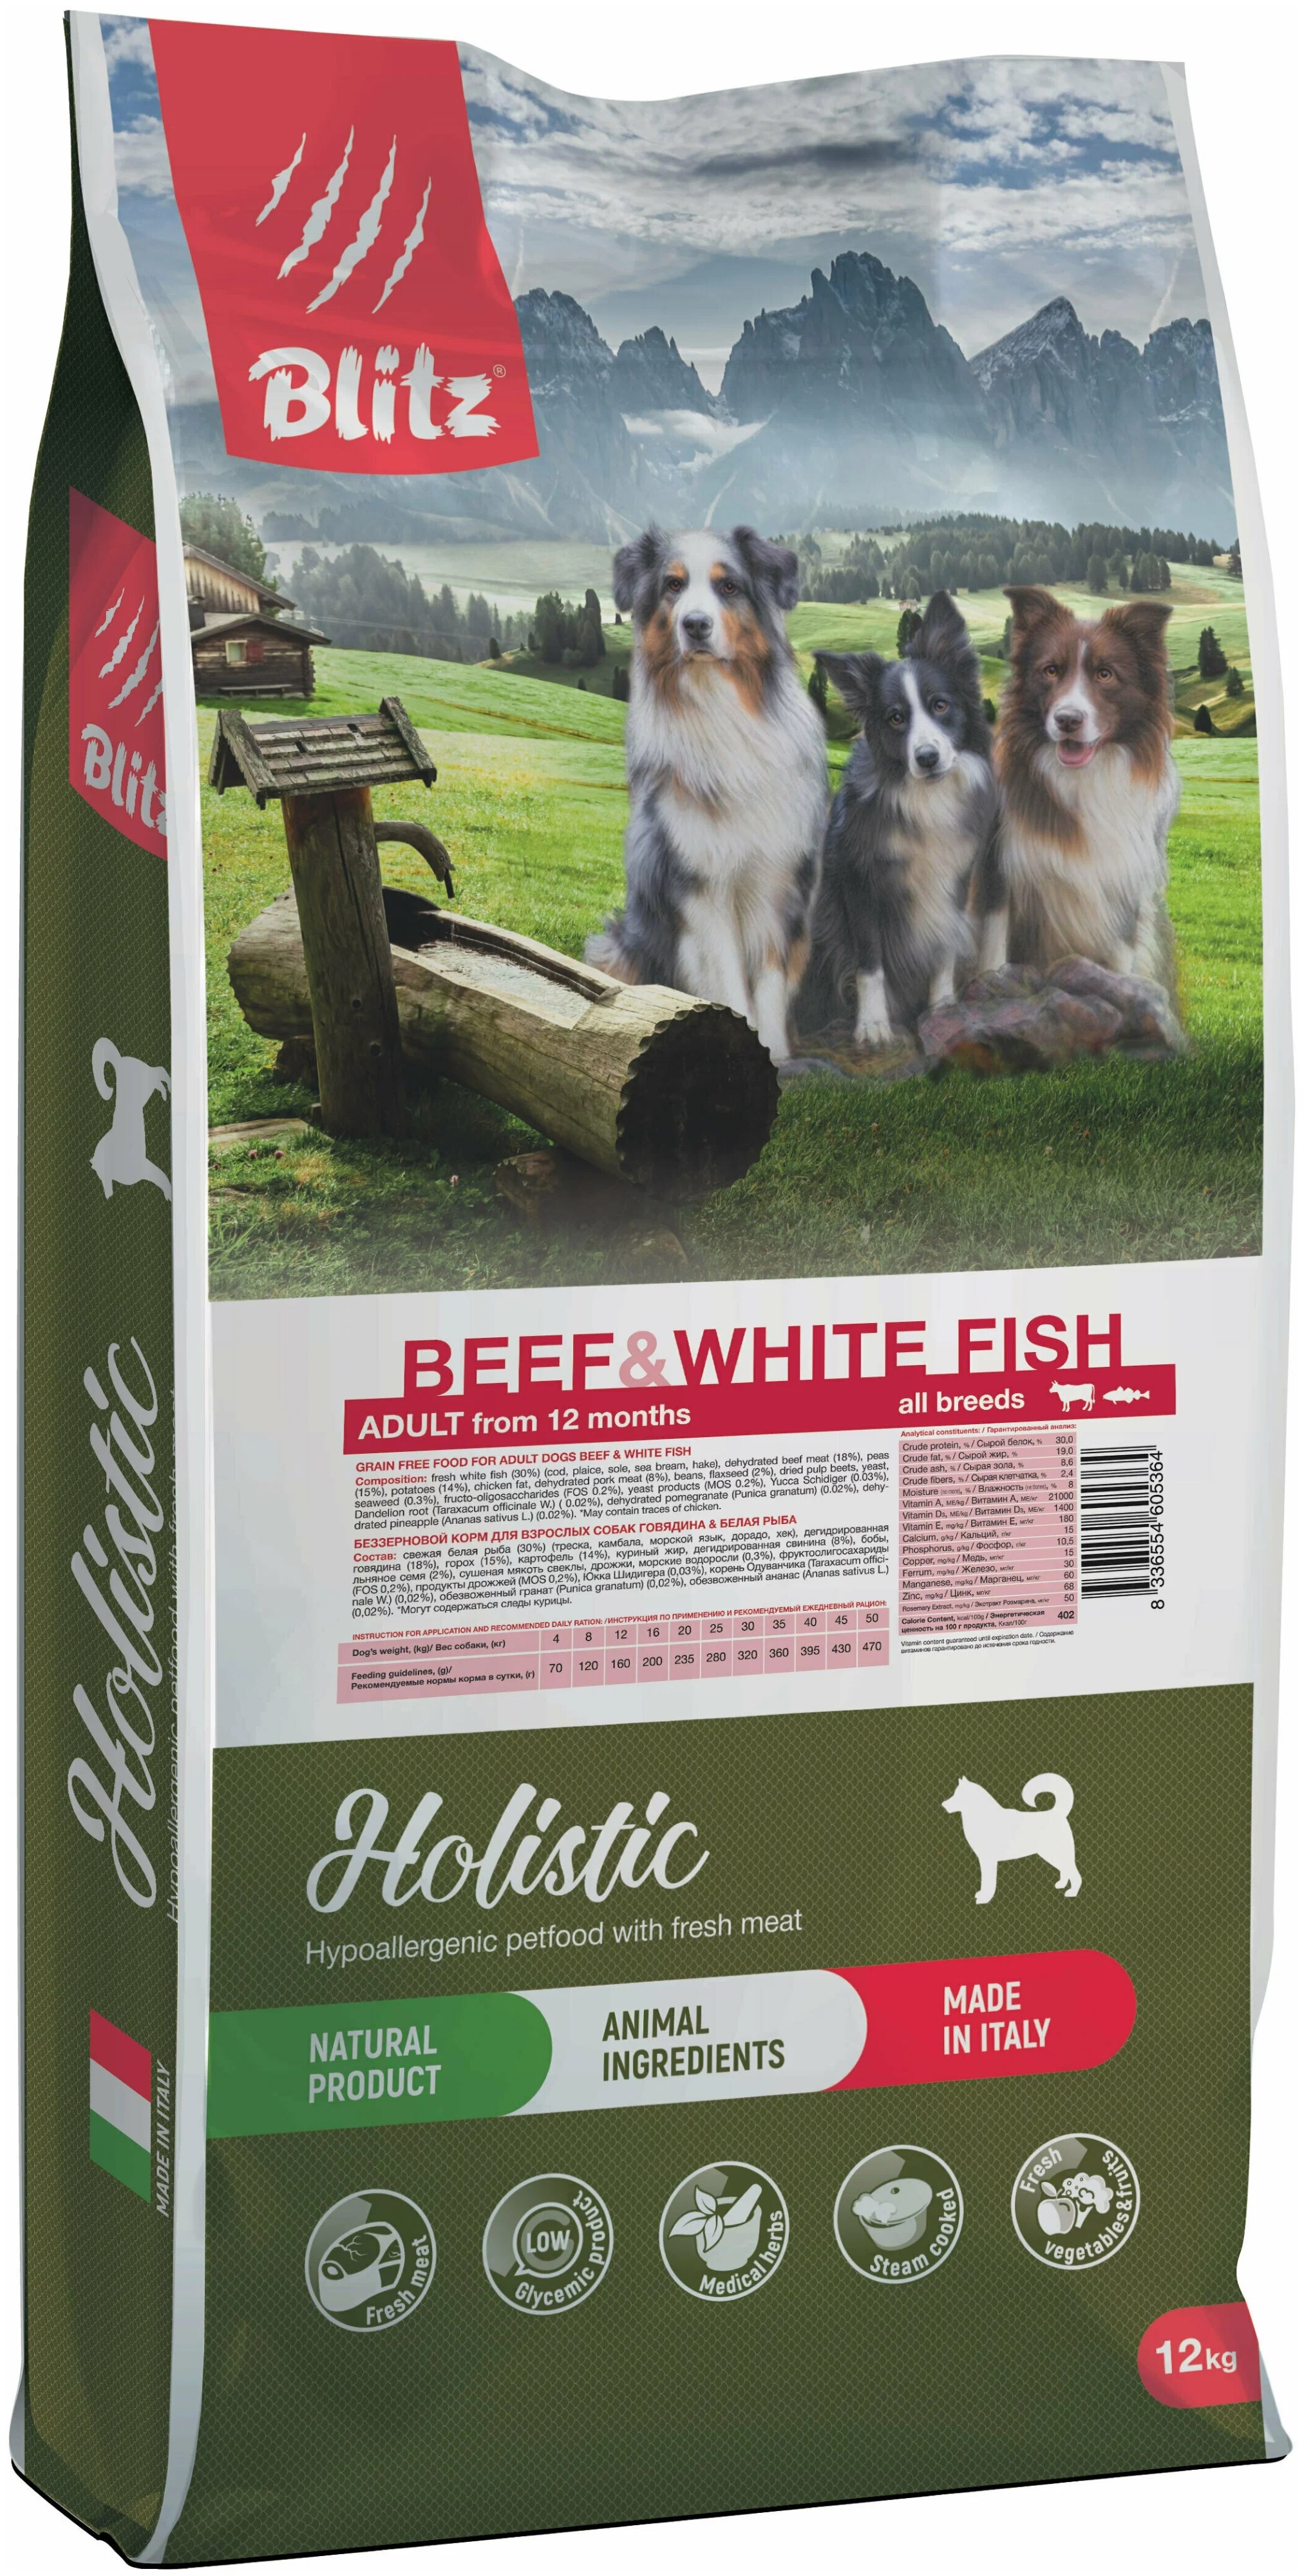 Сухой корм для собак Blitz Holistic, все породы, беззерновой, говядина и белая рыба, 12кг